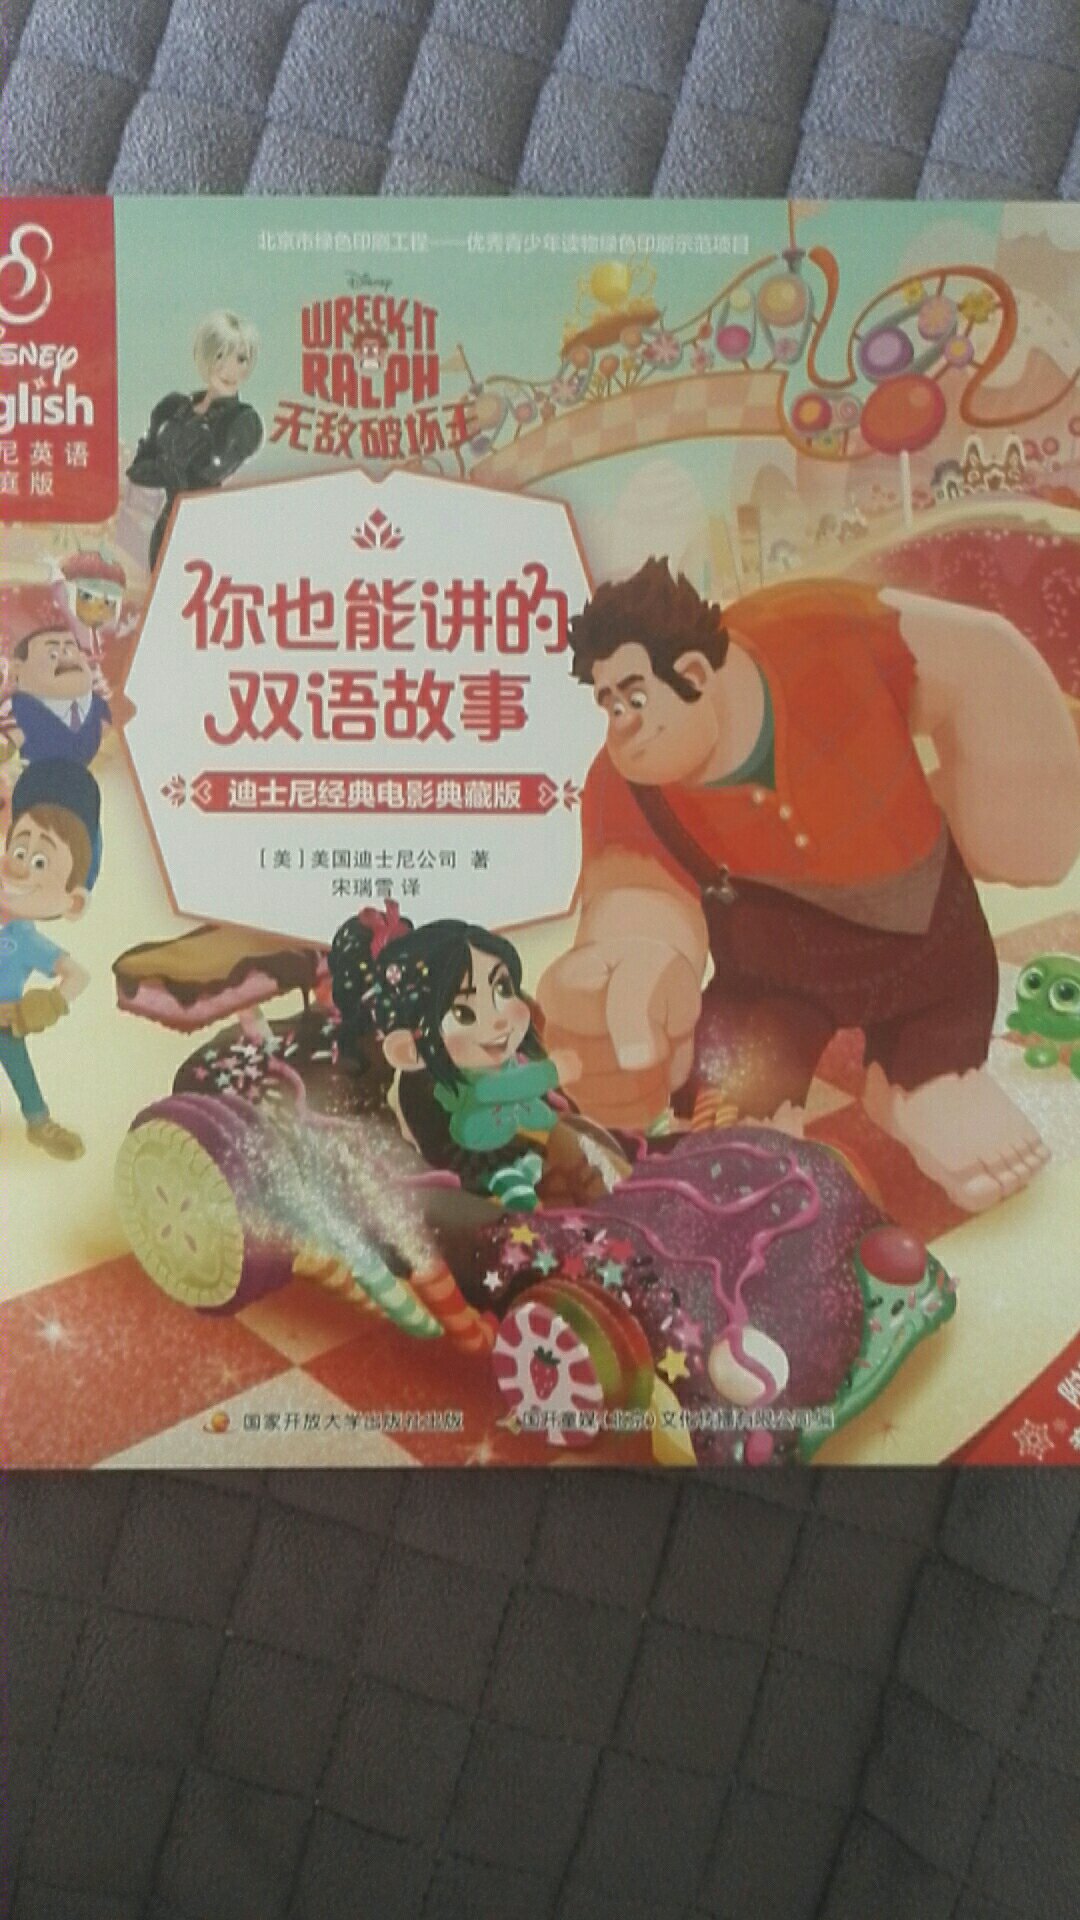 书一回来孩子就爱不释手。印刷质量很好，中英对照很方便给孩子将故事。